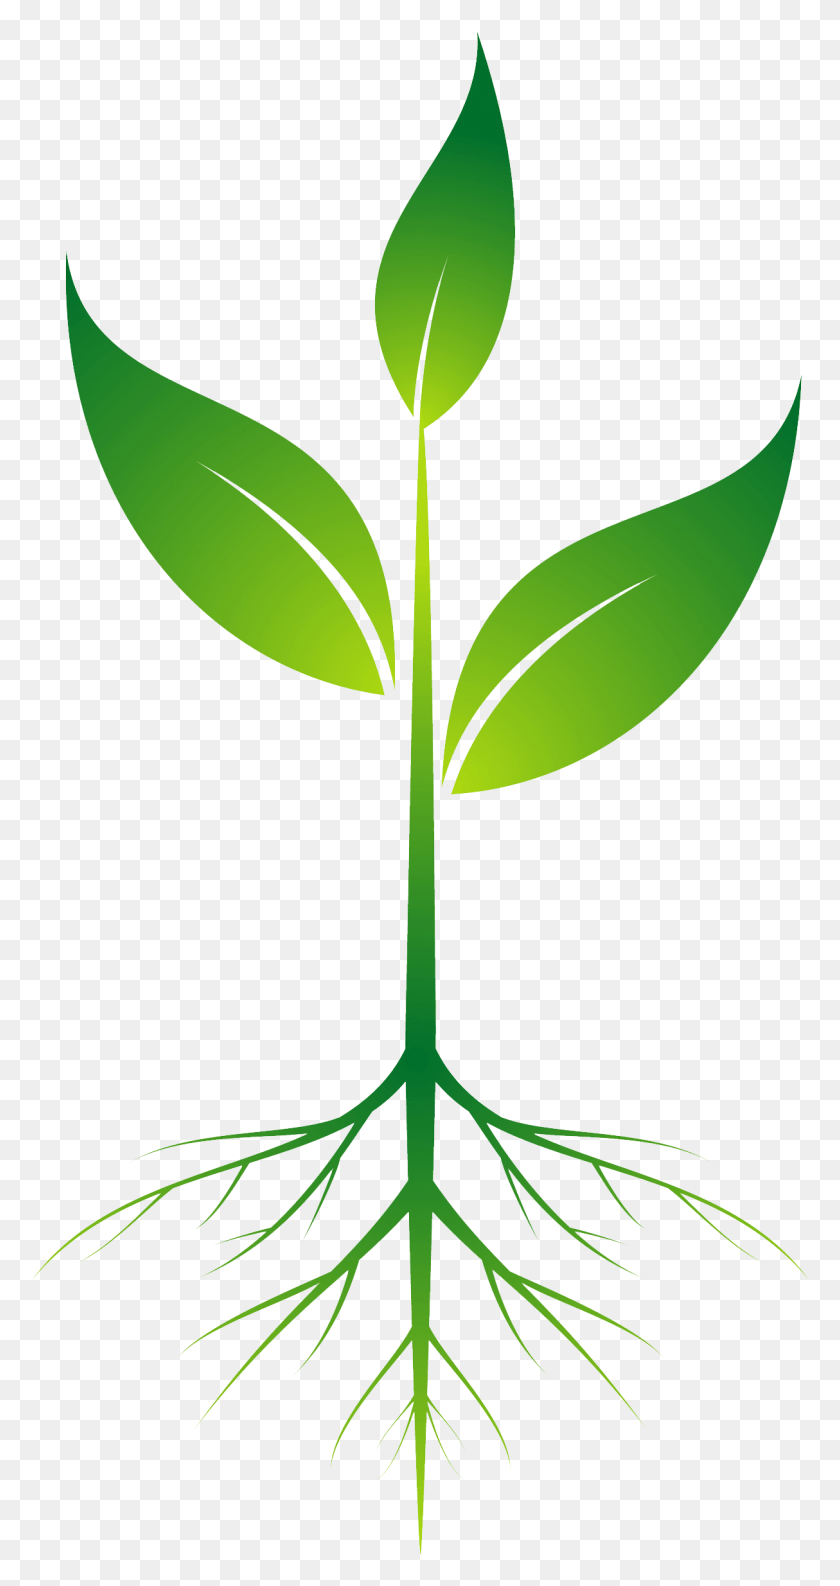 1214x2376 Корни Растения Картинки Прозрачный Бесплатно Корни Растений Картинки, Лист, Зеленый, Росток Png Скачать